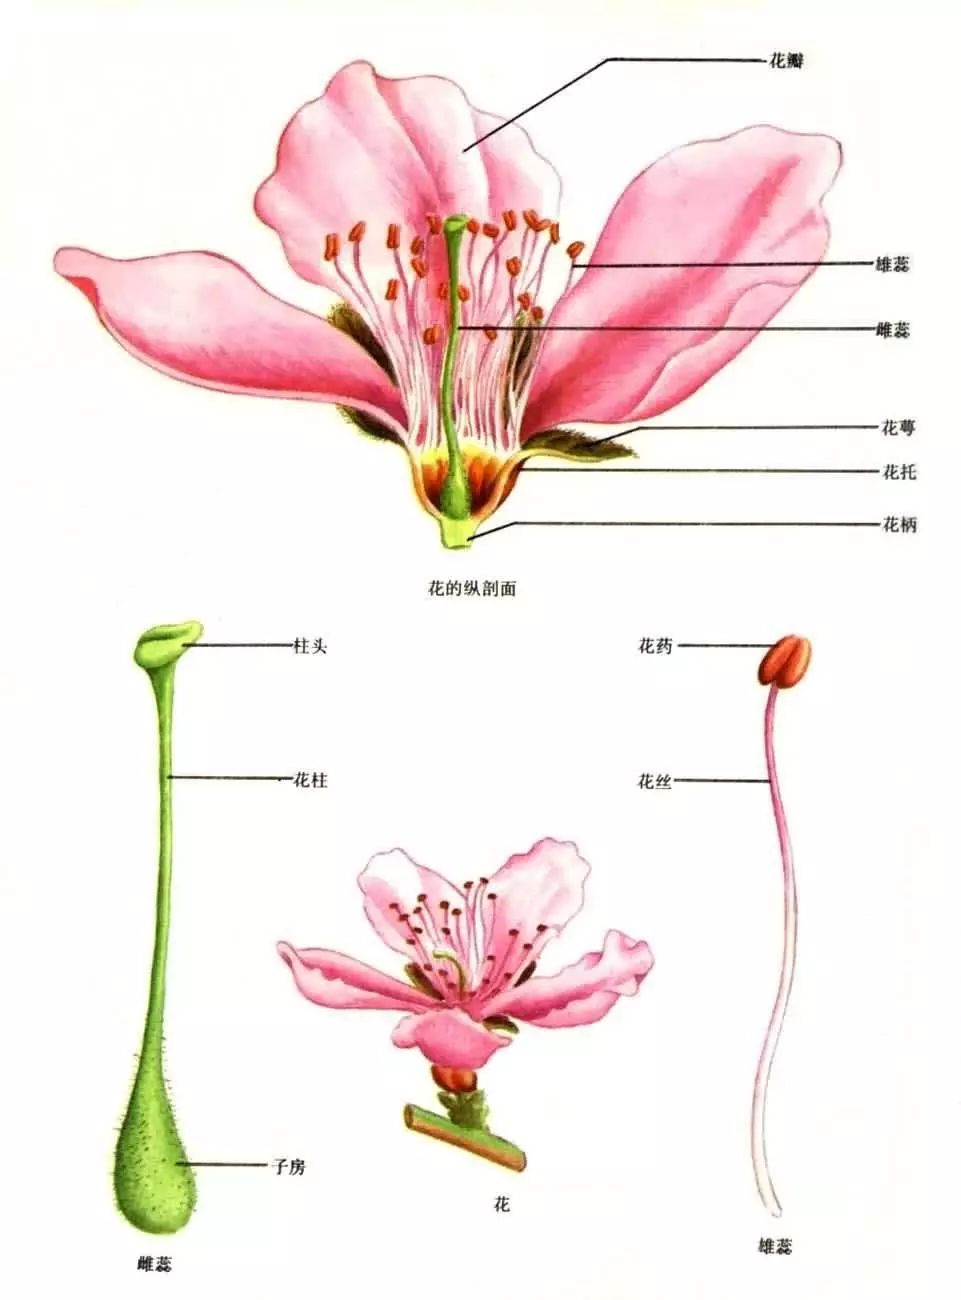 典型被子植物花的结构分成四个部分:萼片,花瓣,雄蕊,雌蕊,它们都着生